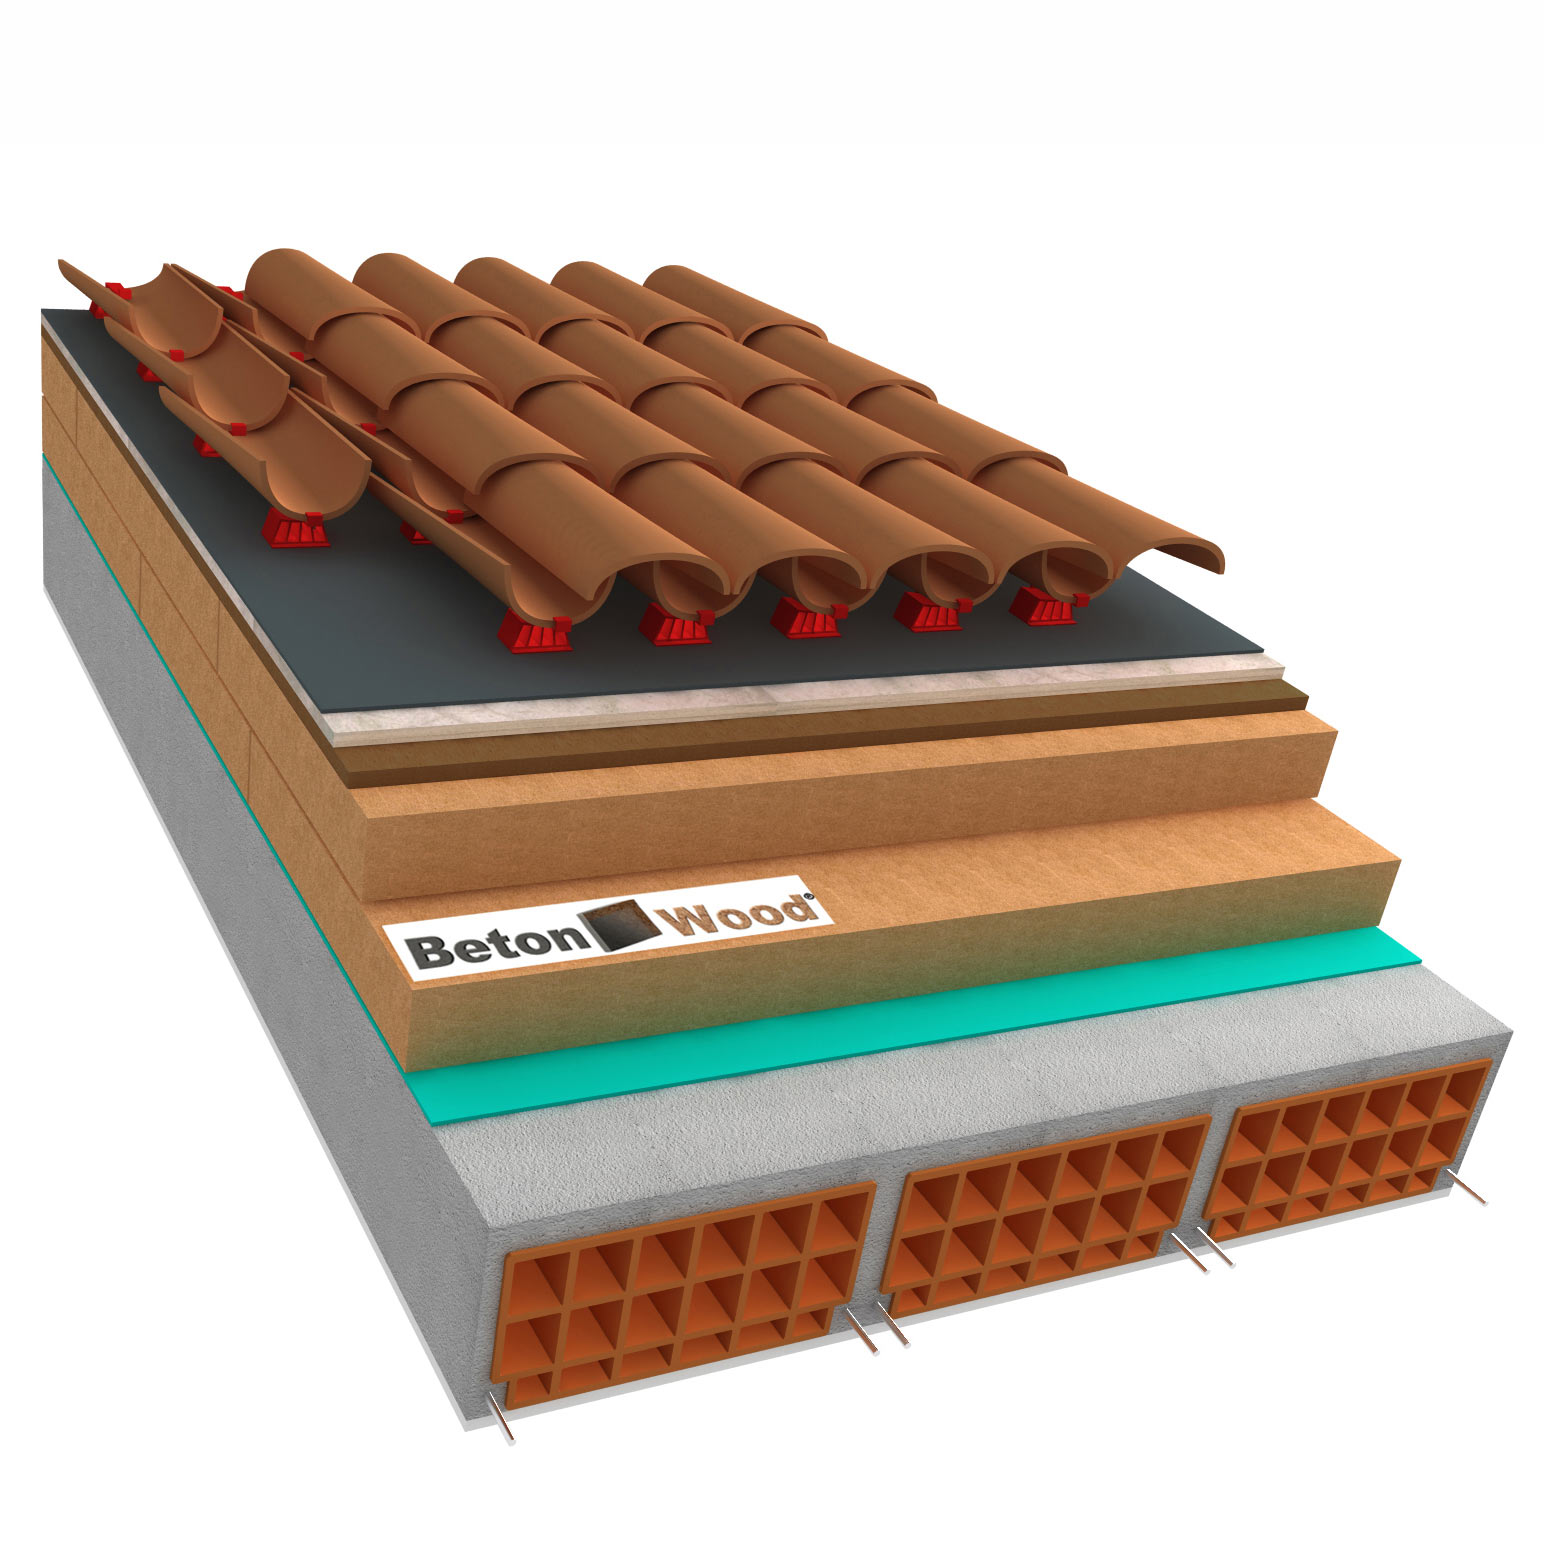 Sistema tetto C fibra di legno Therm, Bitumfiber e cementolegno